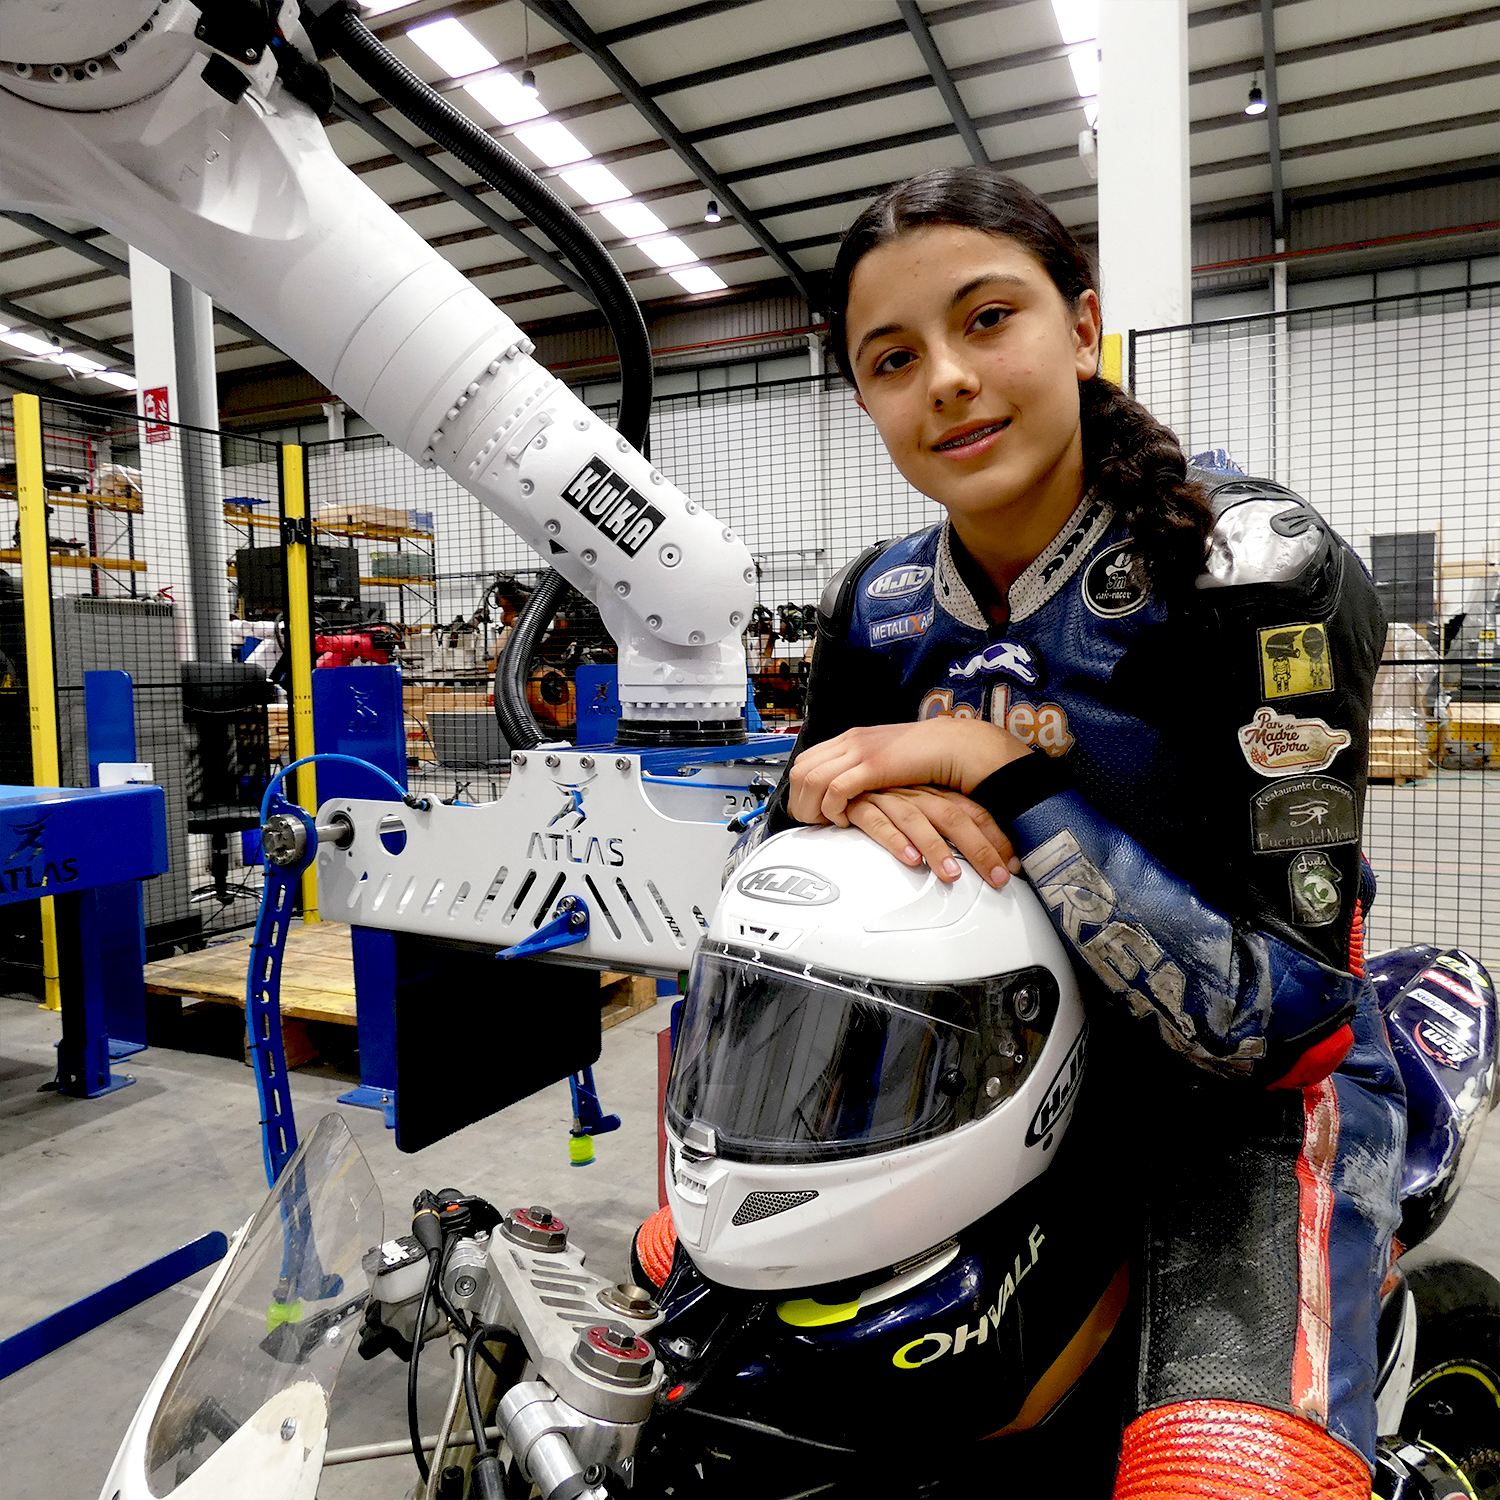 Atlas Robots patrocina a la joven promesa del motociclismo Irene Sandín, en su camino hacia el éxito